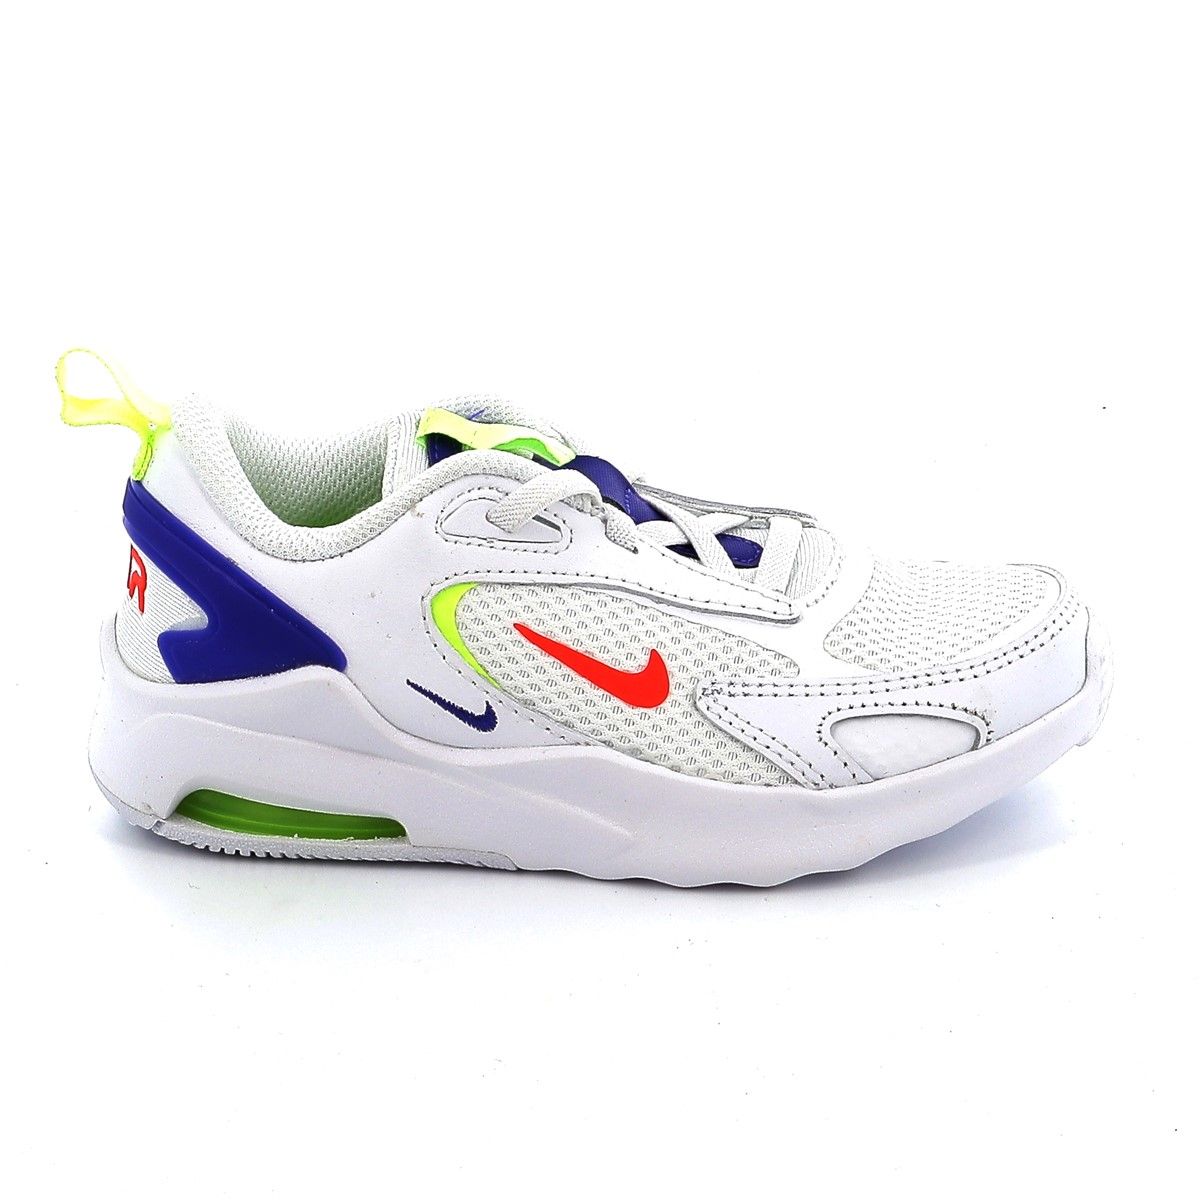 Παιδικό Αθλητικό Nike Air Max Bolt Χρώματος Λευκό CW1627 103